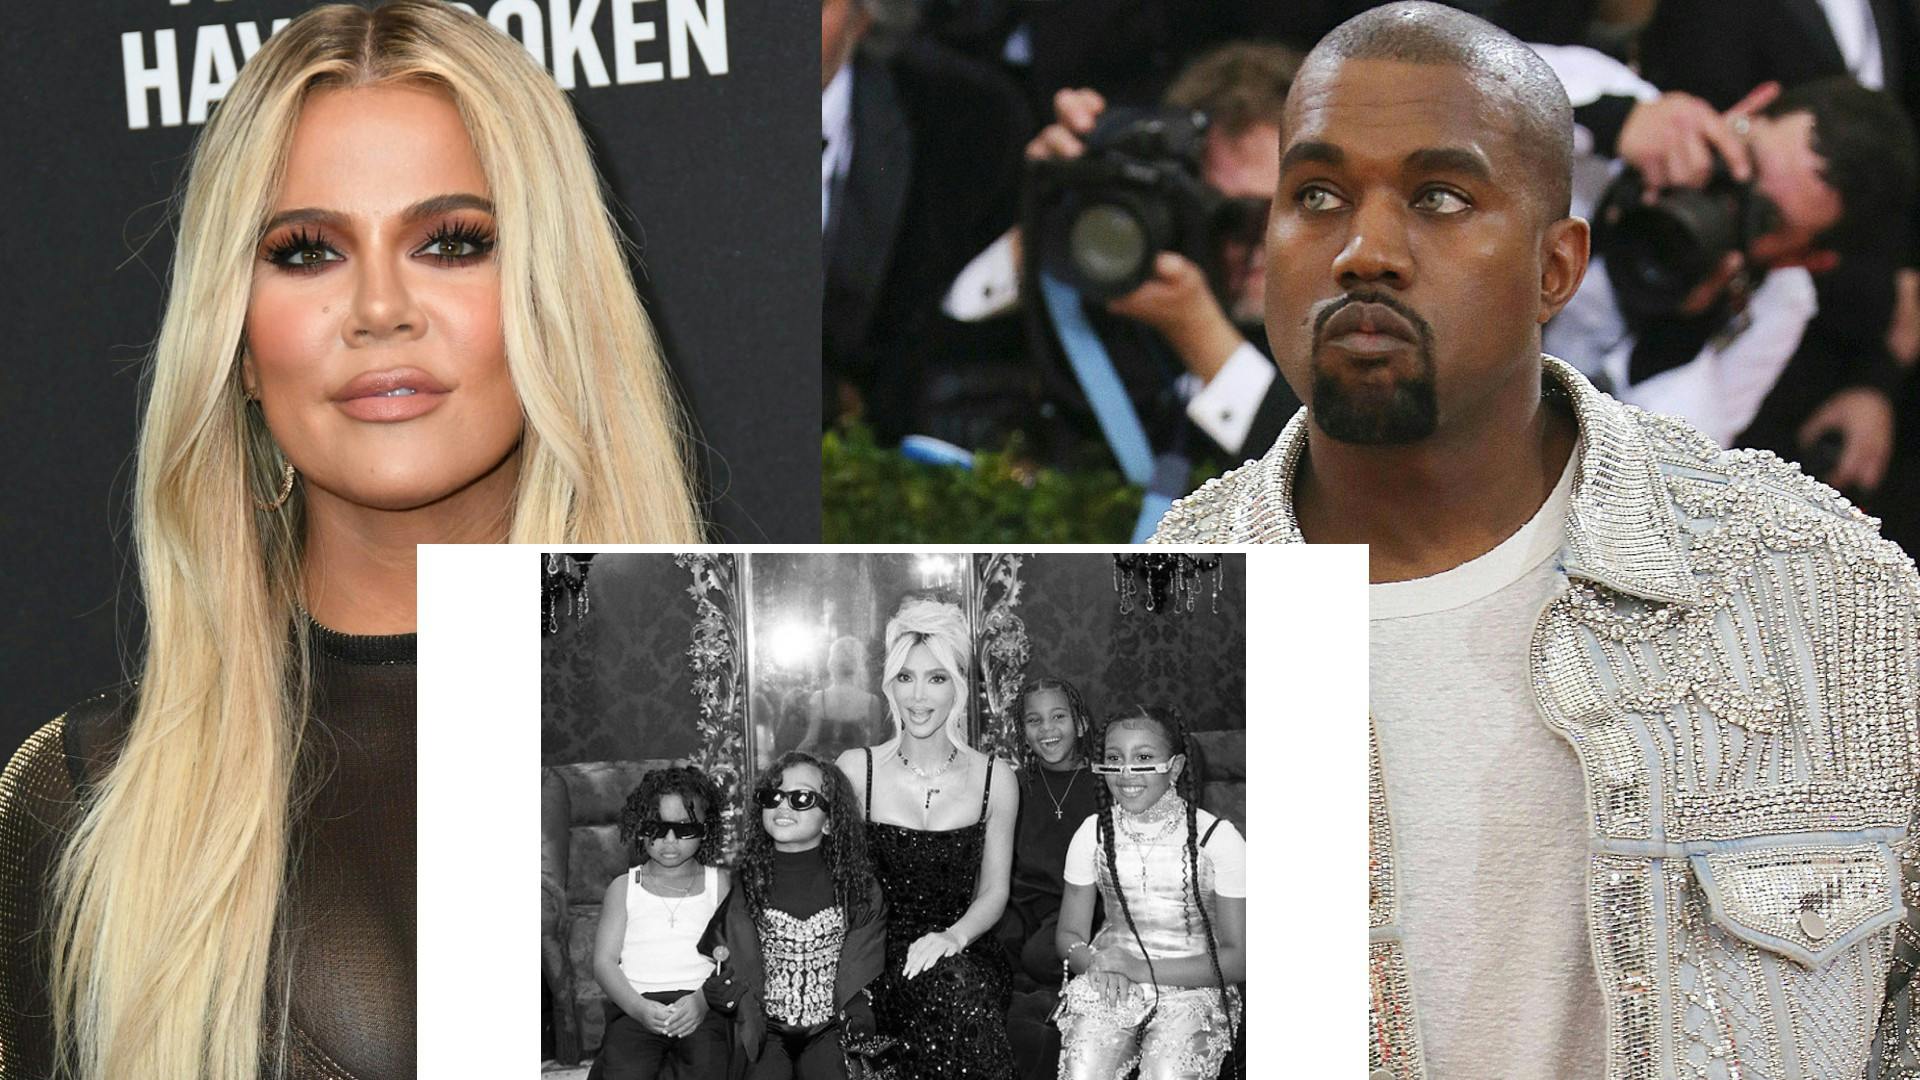 Bølgerne går højt mellem Kardashian-søsteren Khloé og hendes tidligere svoger Kanye West